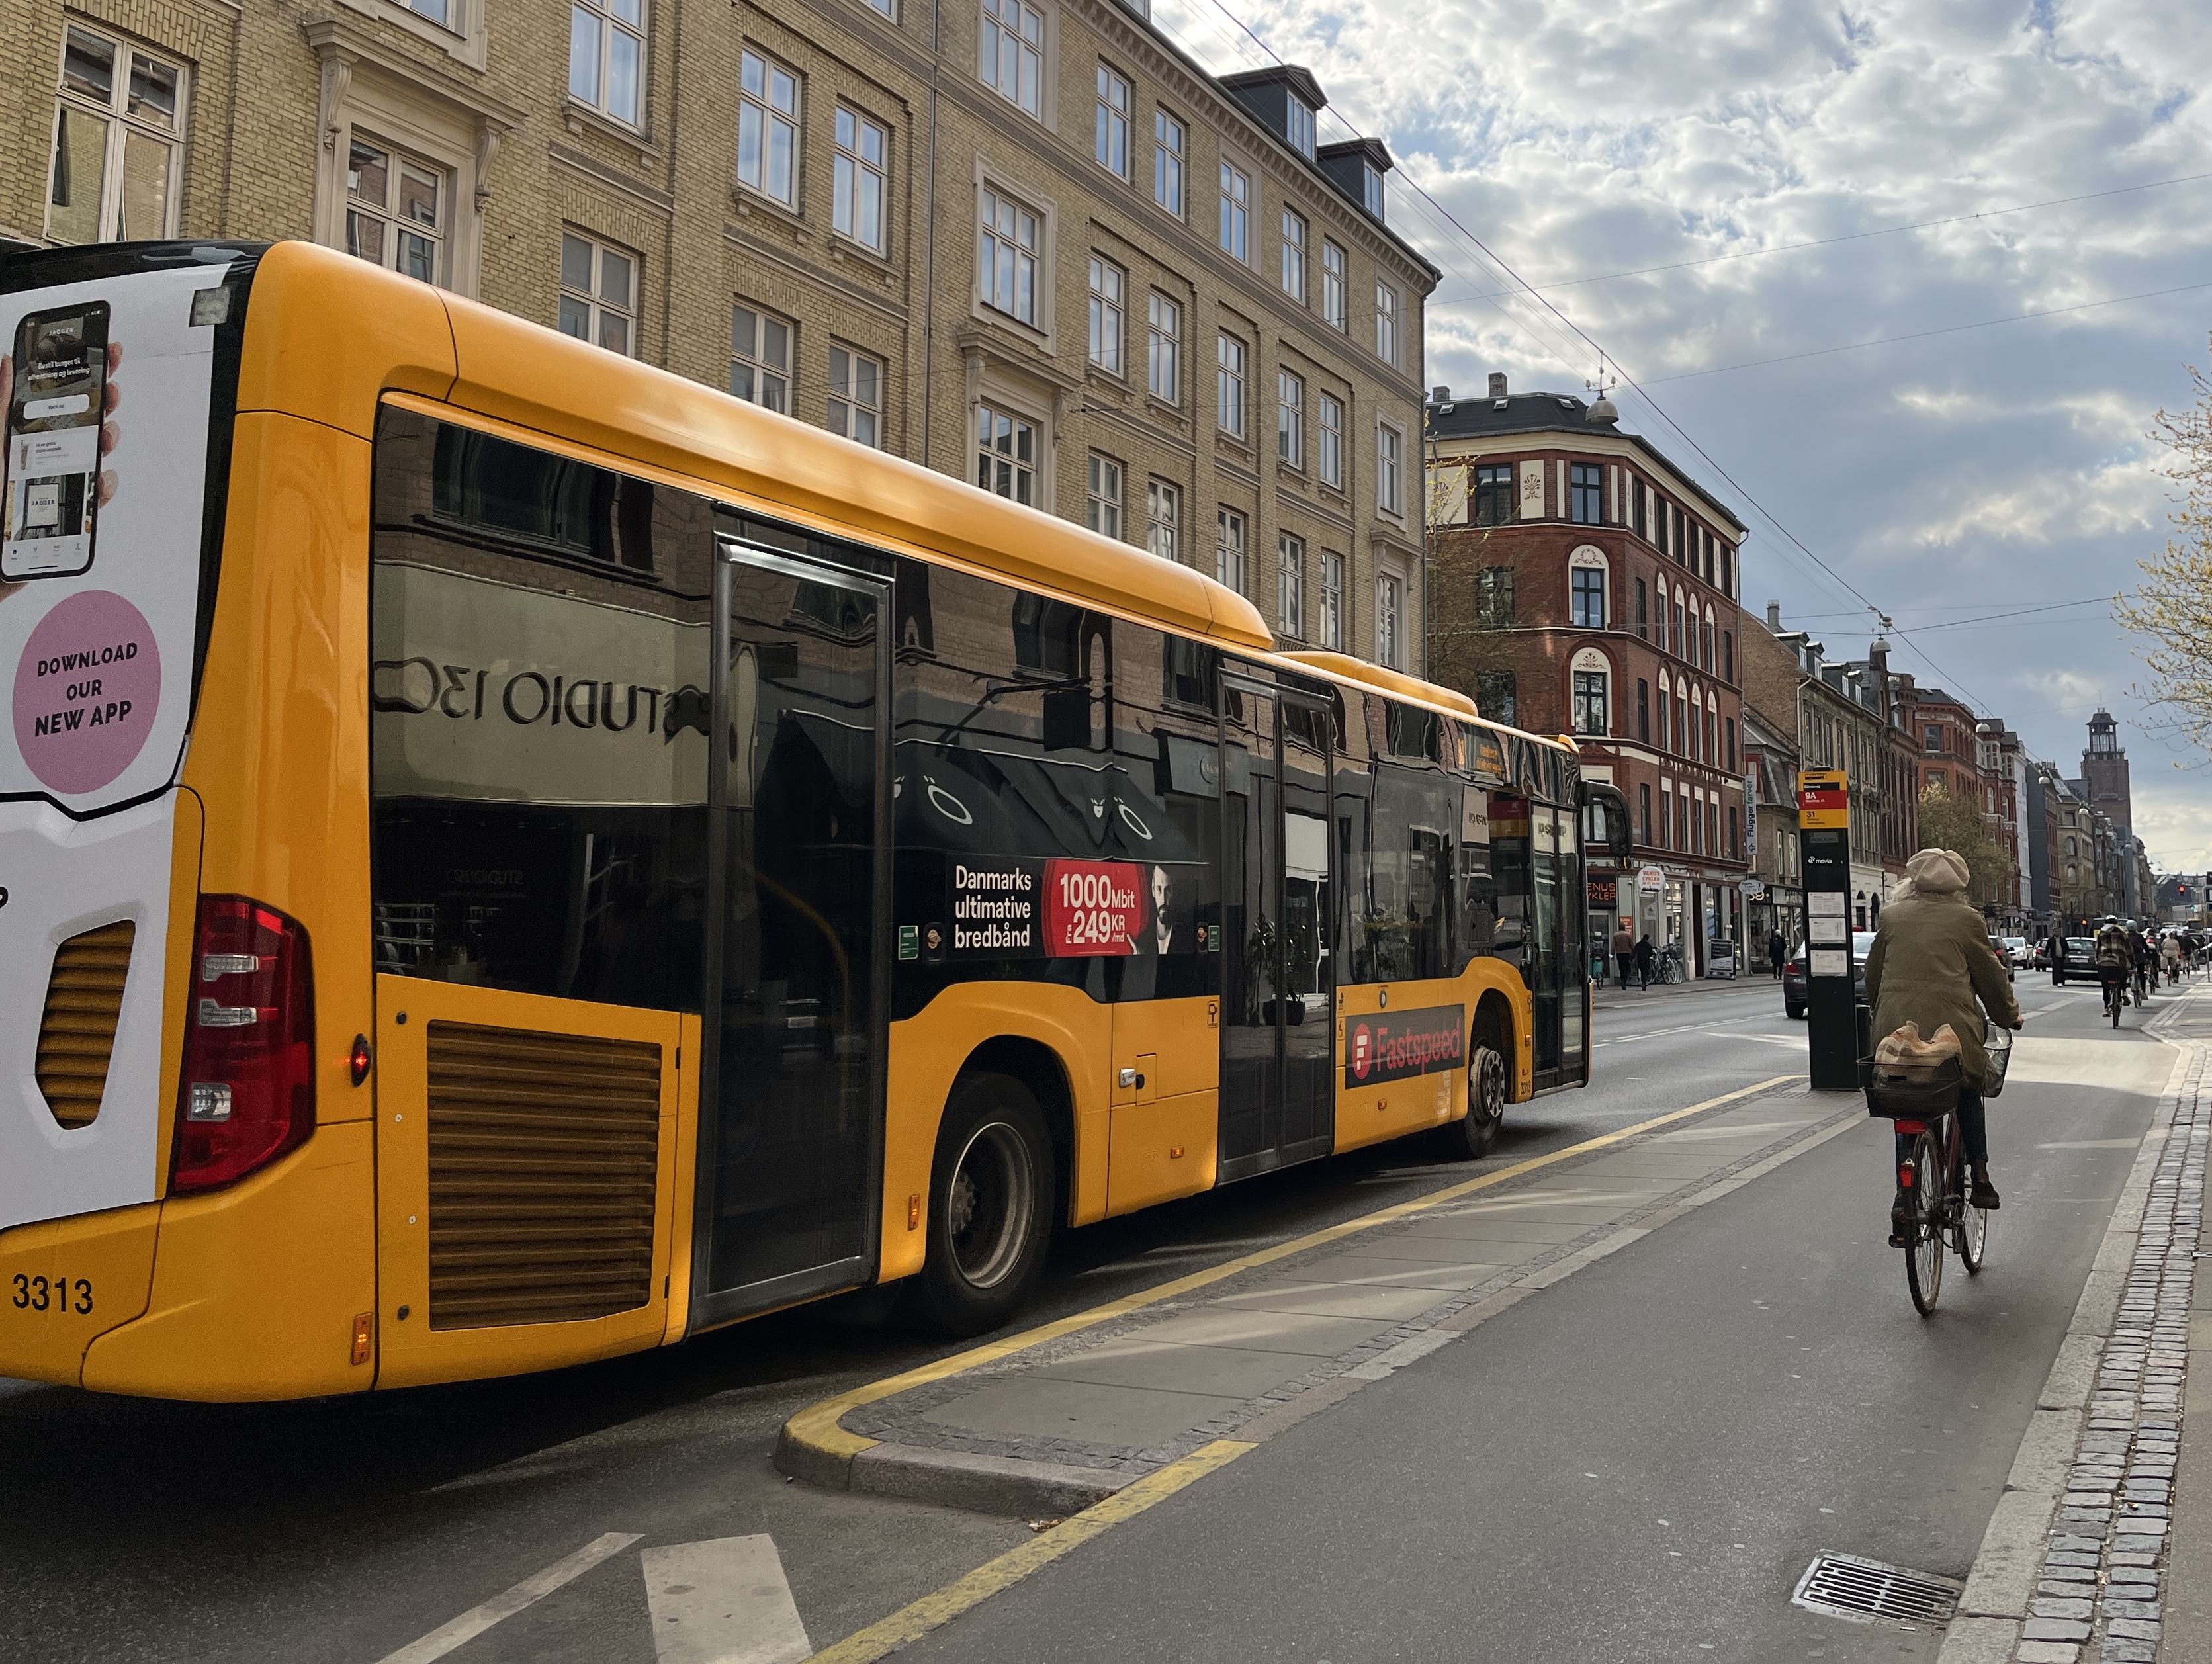 Kaos ved busstoppestederne: Danskerne ved hvem der har vigepligt Gjensidige